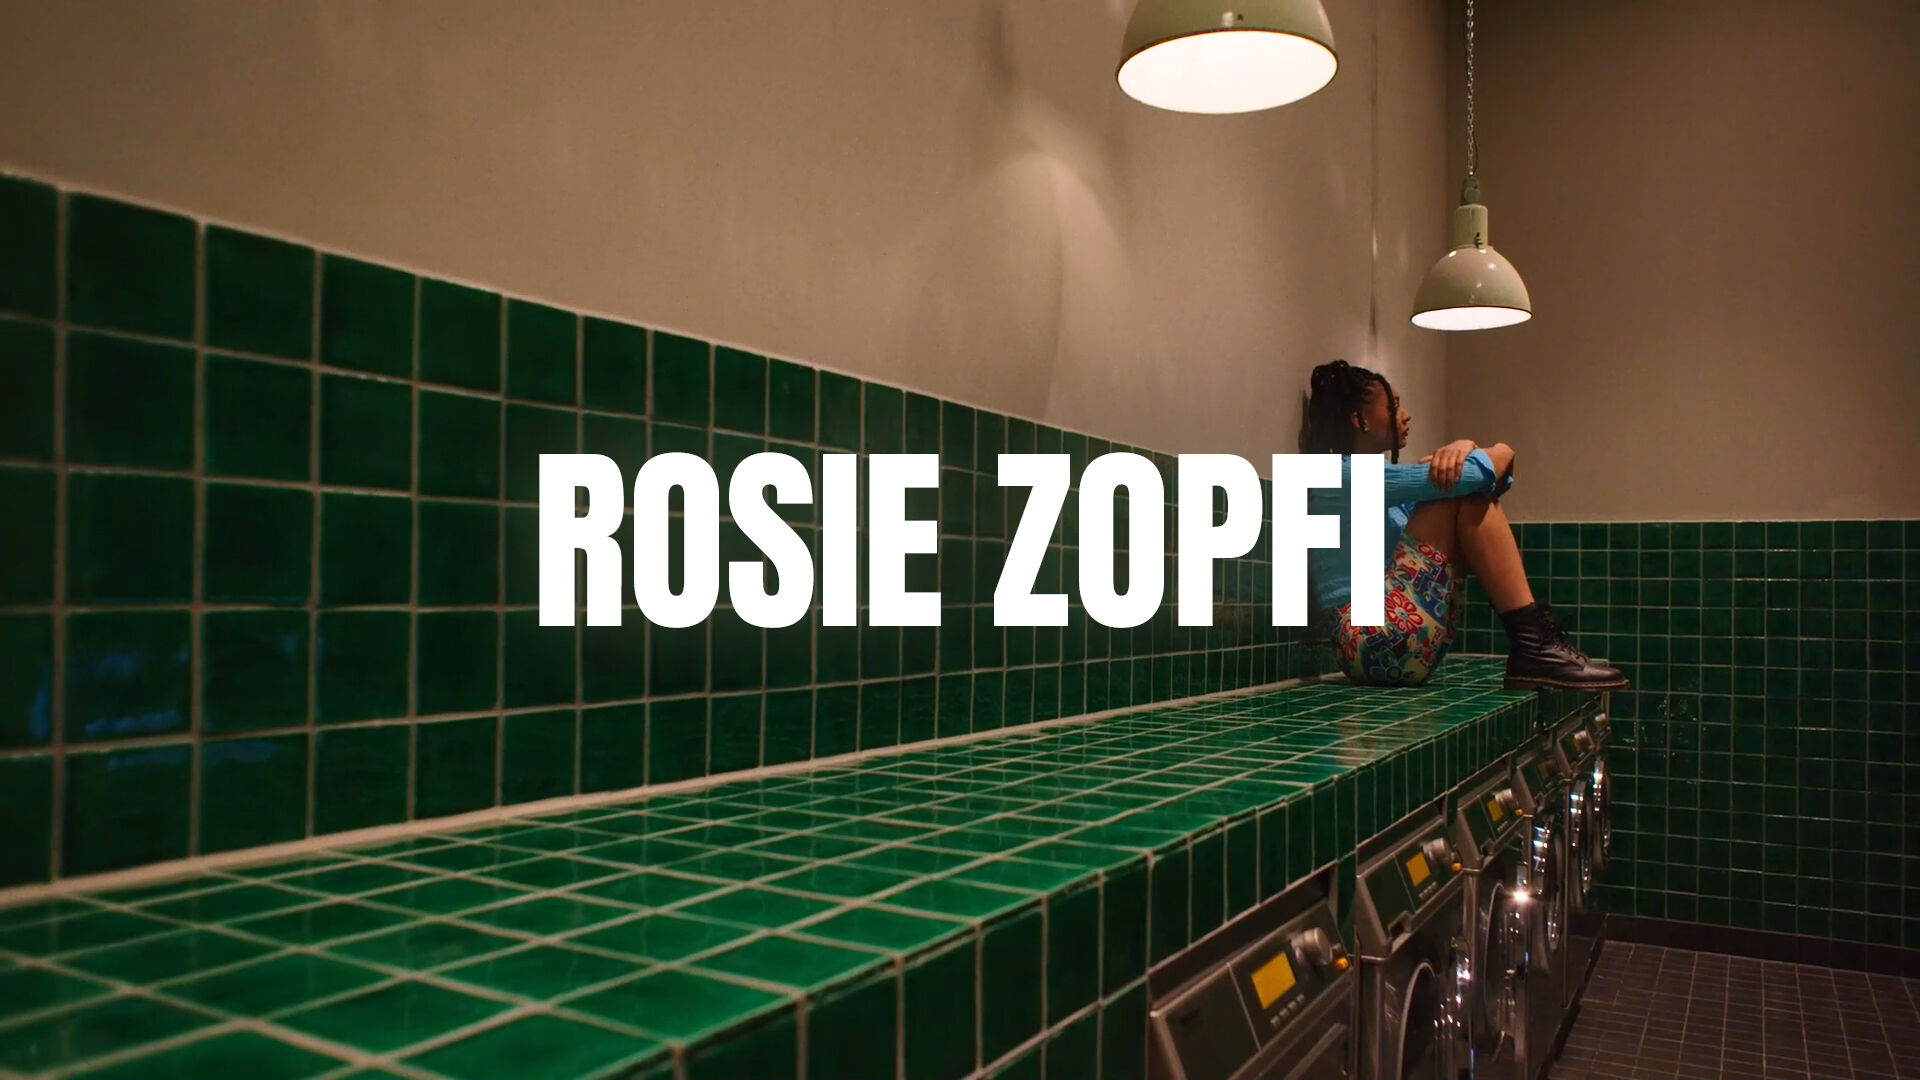 Must see: Brabants talent | Rosie Zopfi